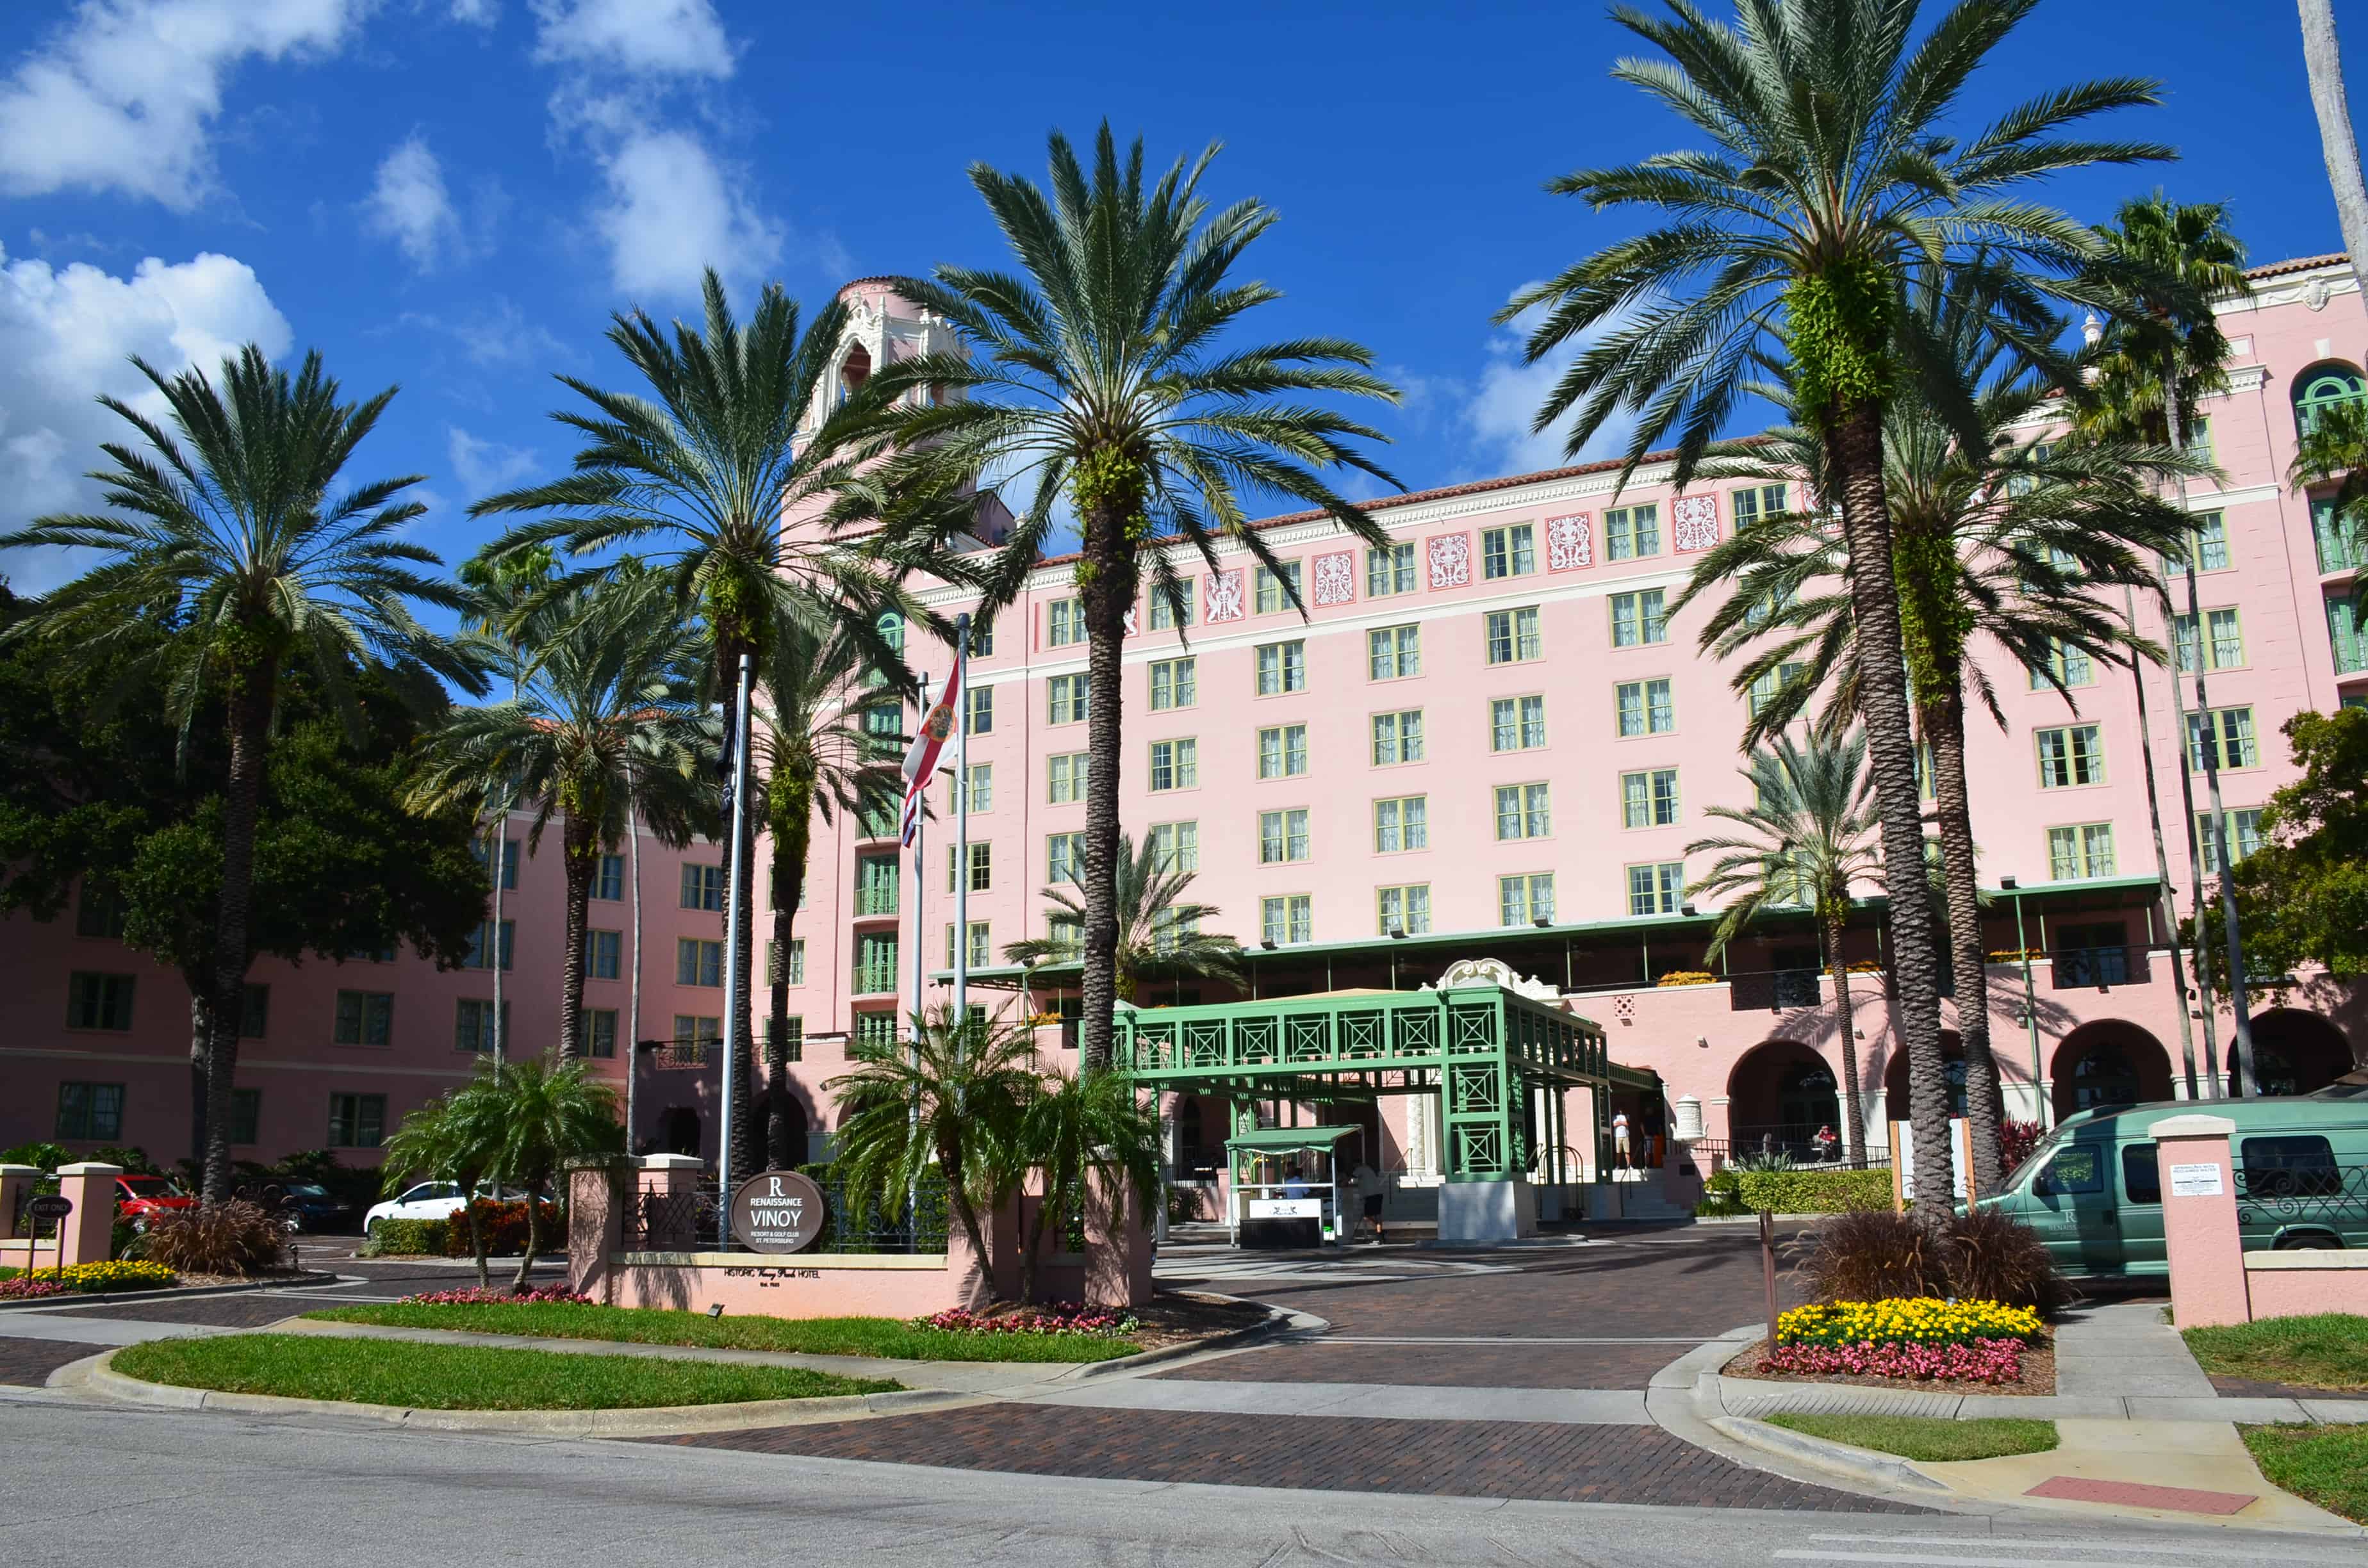 Vinoy Resort in St. Petersburg, Florida